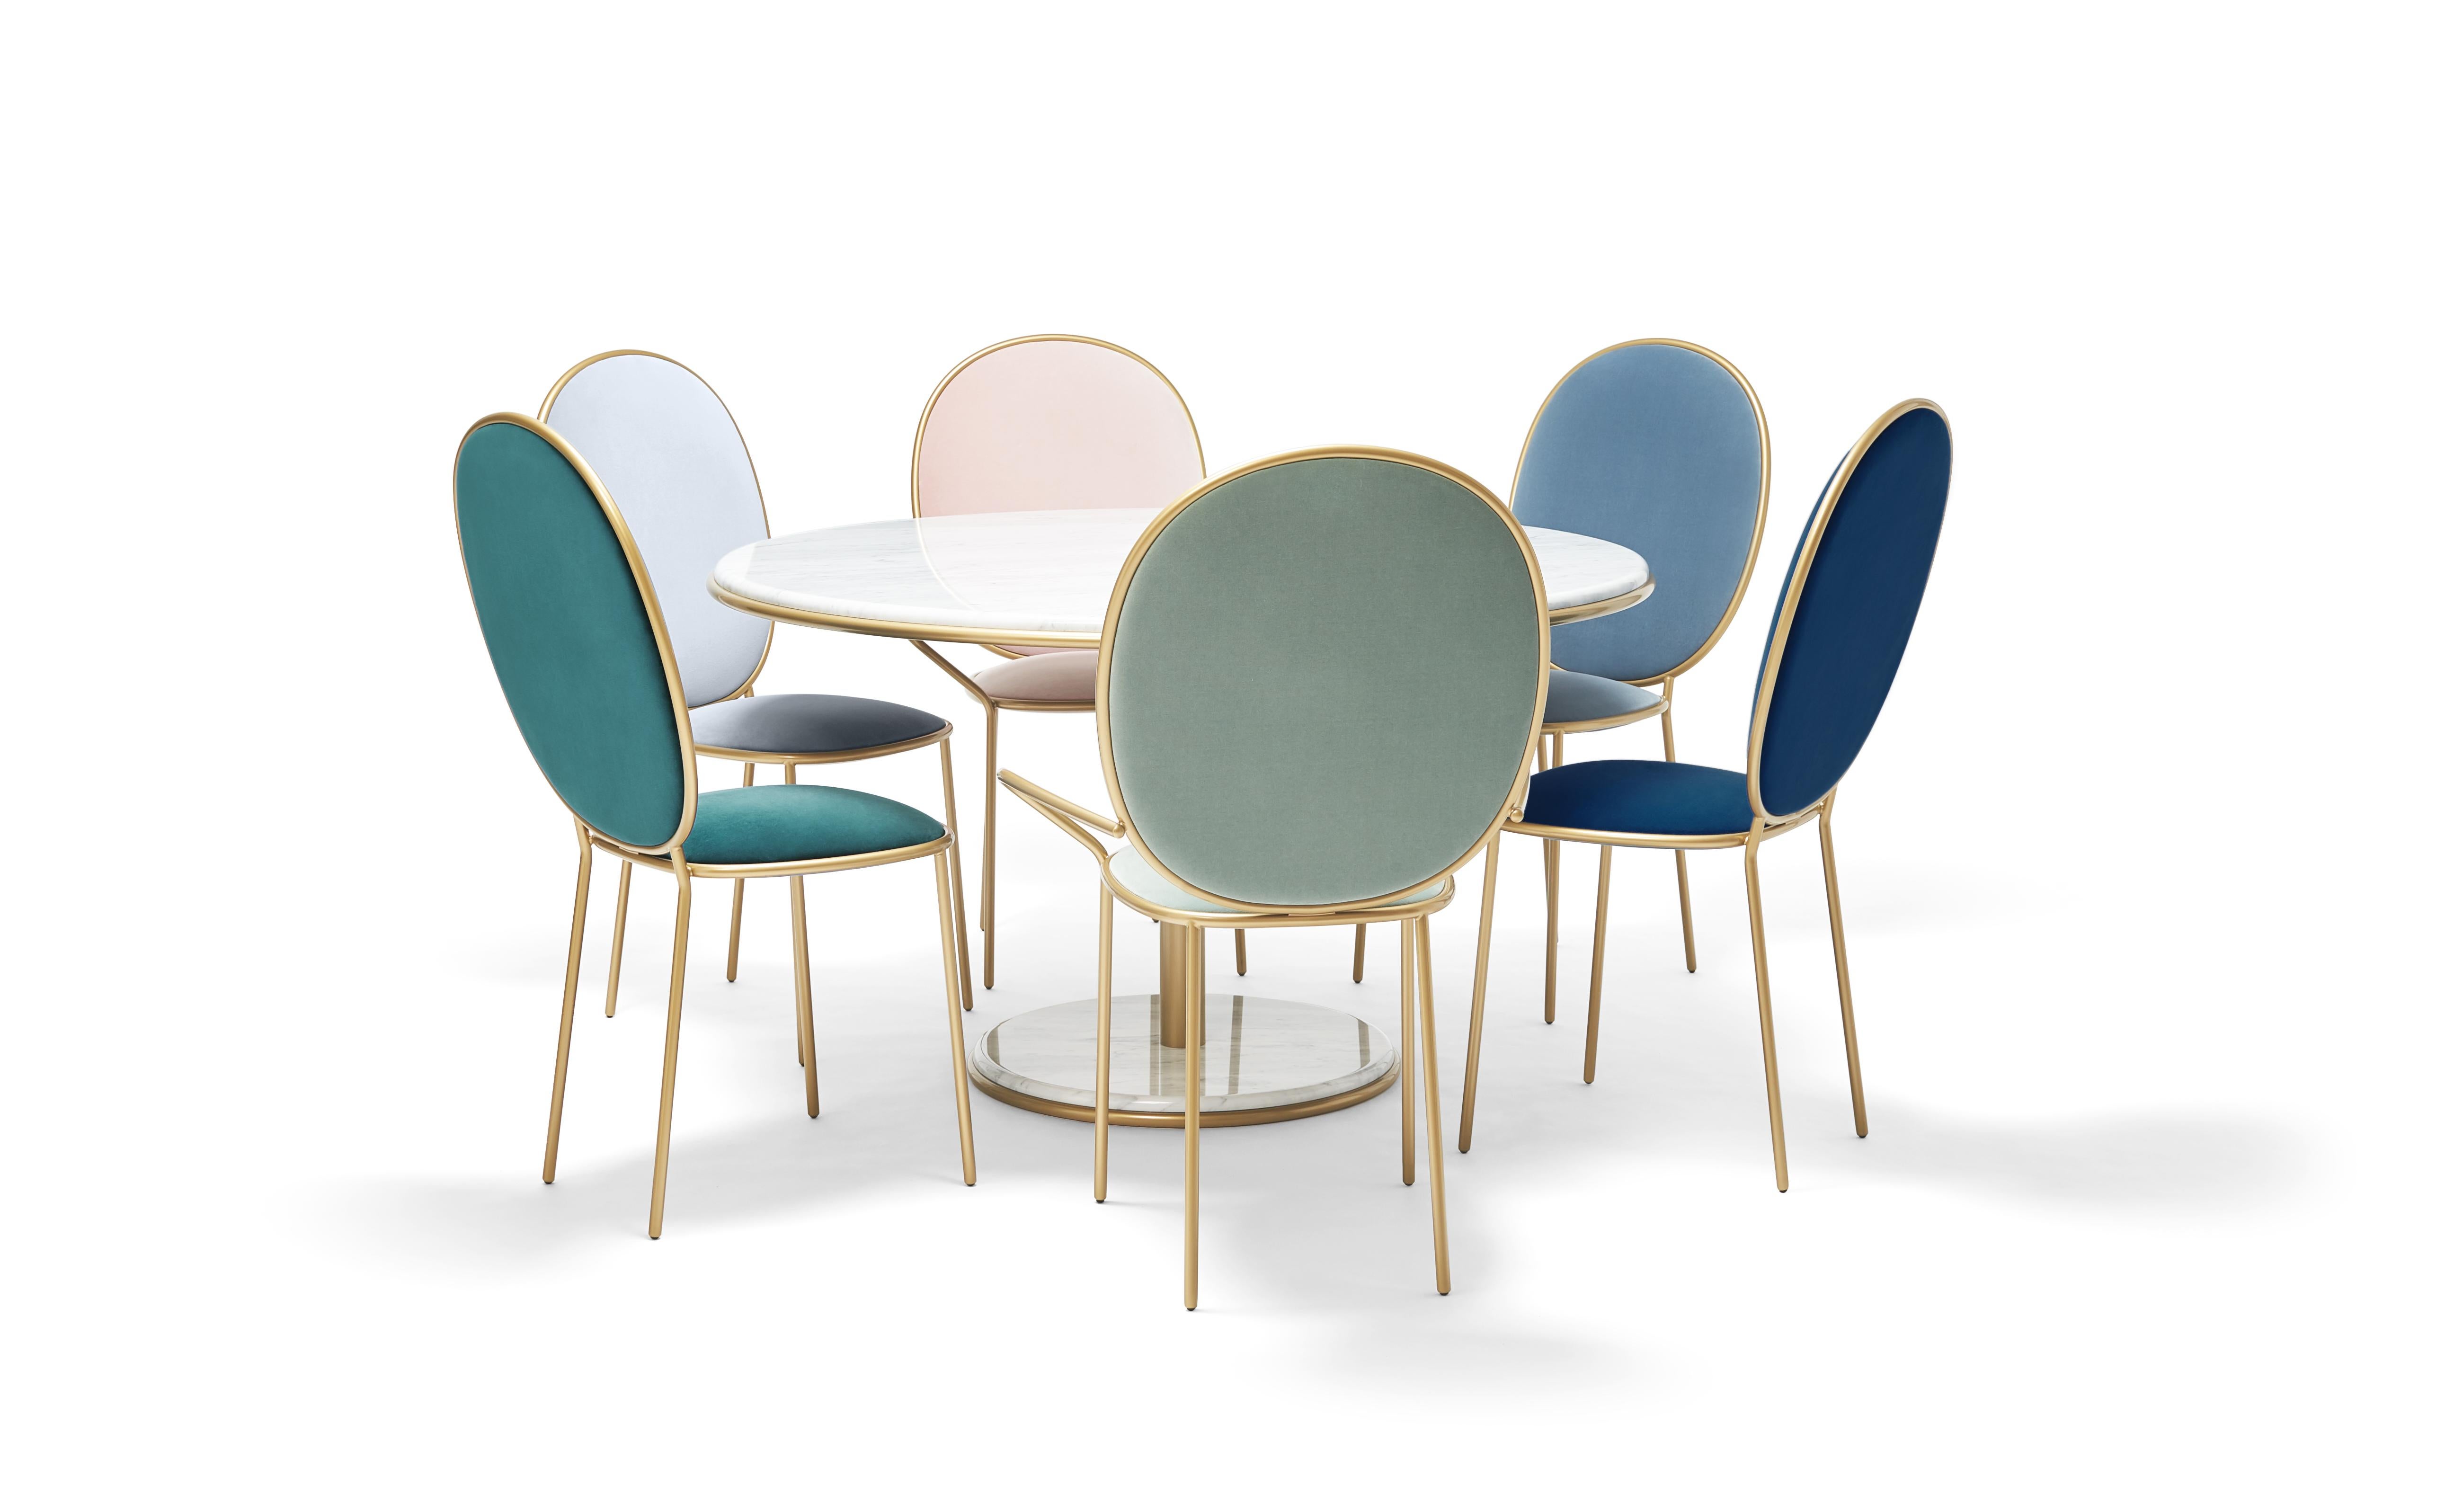 Chaise de salle à manger contemporaine Fumo, tapissée de velours brun - Stay by Nika Zupanc

La famille Stay transforme les repas de tous les jours en une occasion spéciale. La chaise et le fauteuil de salle à manger sont des variations sur un